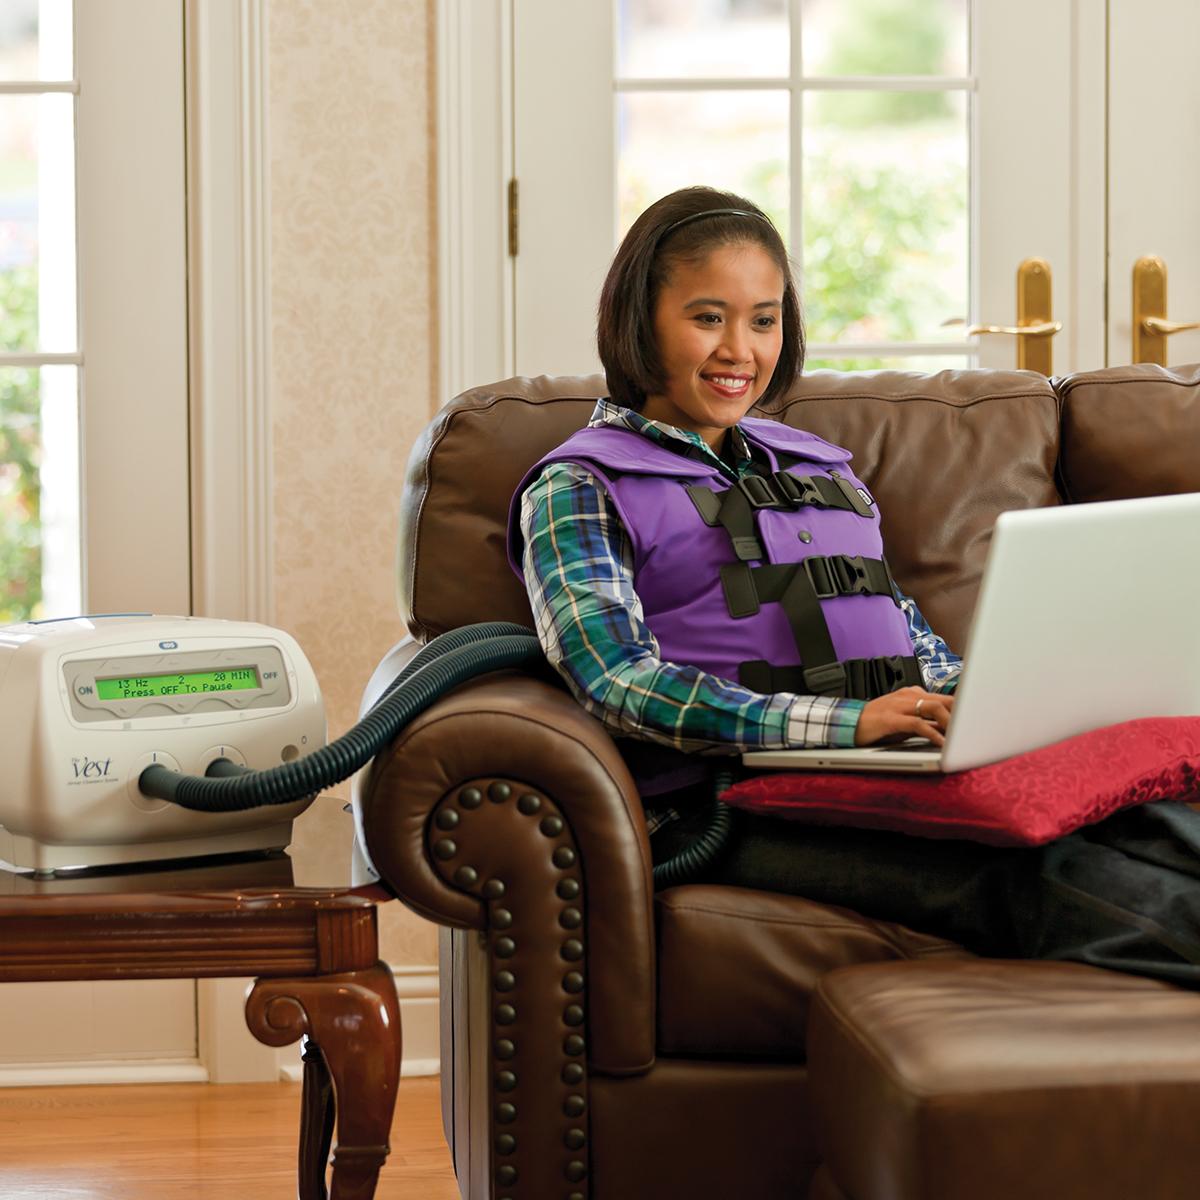 Młoda kobieta pracuje przy komputerze, używając systemu The Vest z kamizelką w kolorze Color Me Purple.